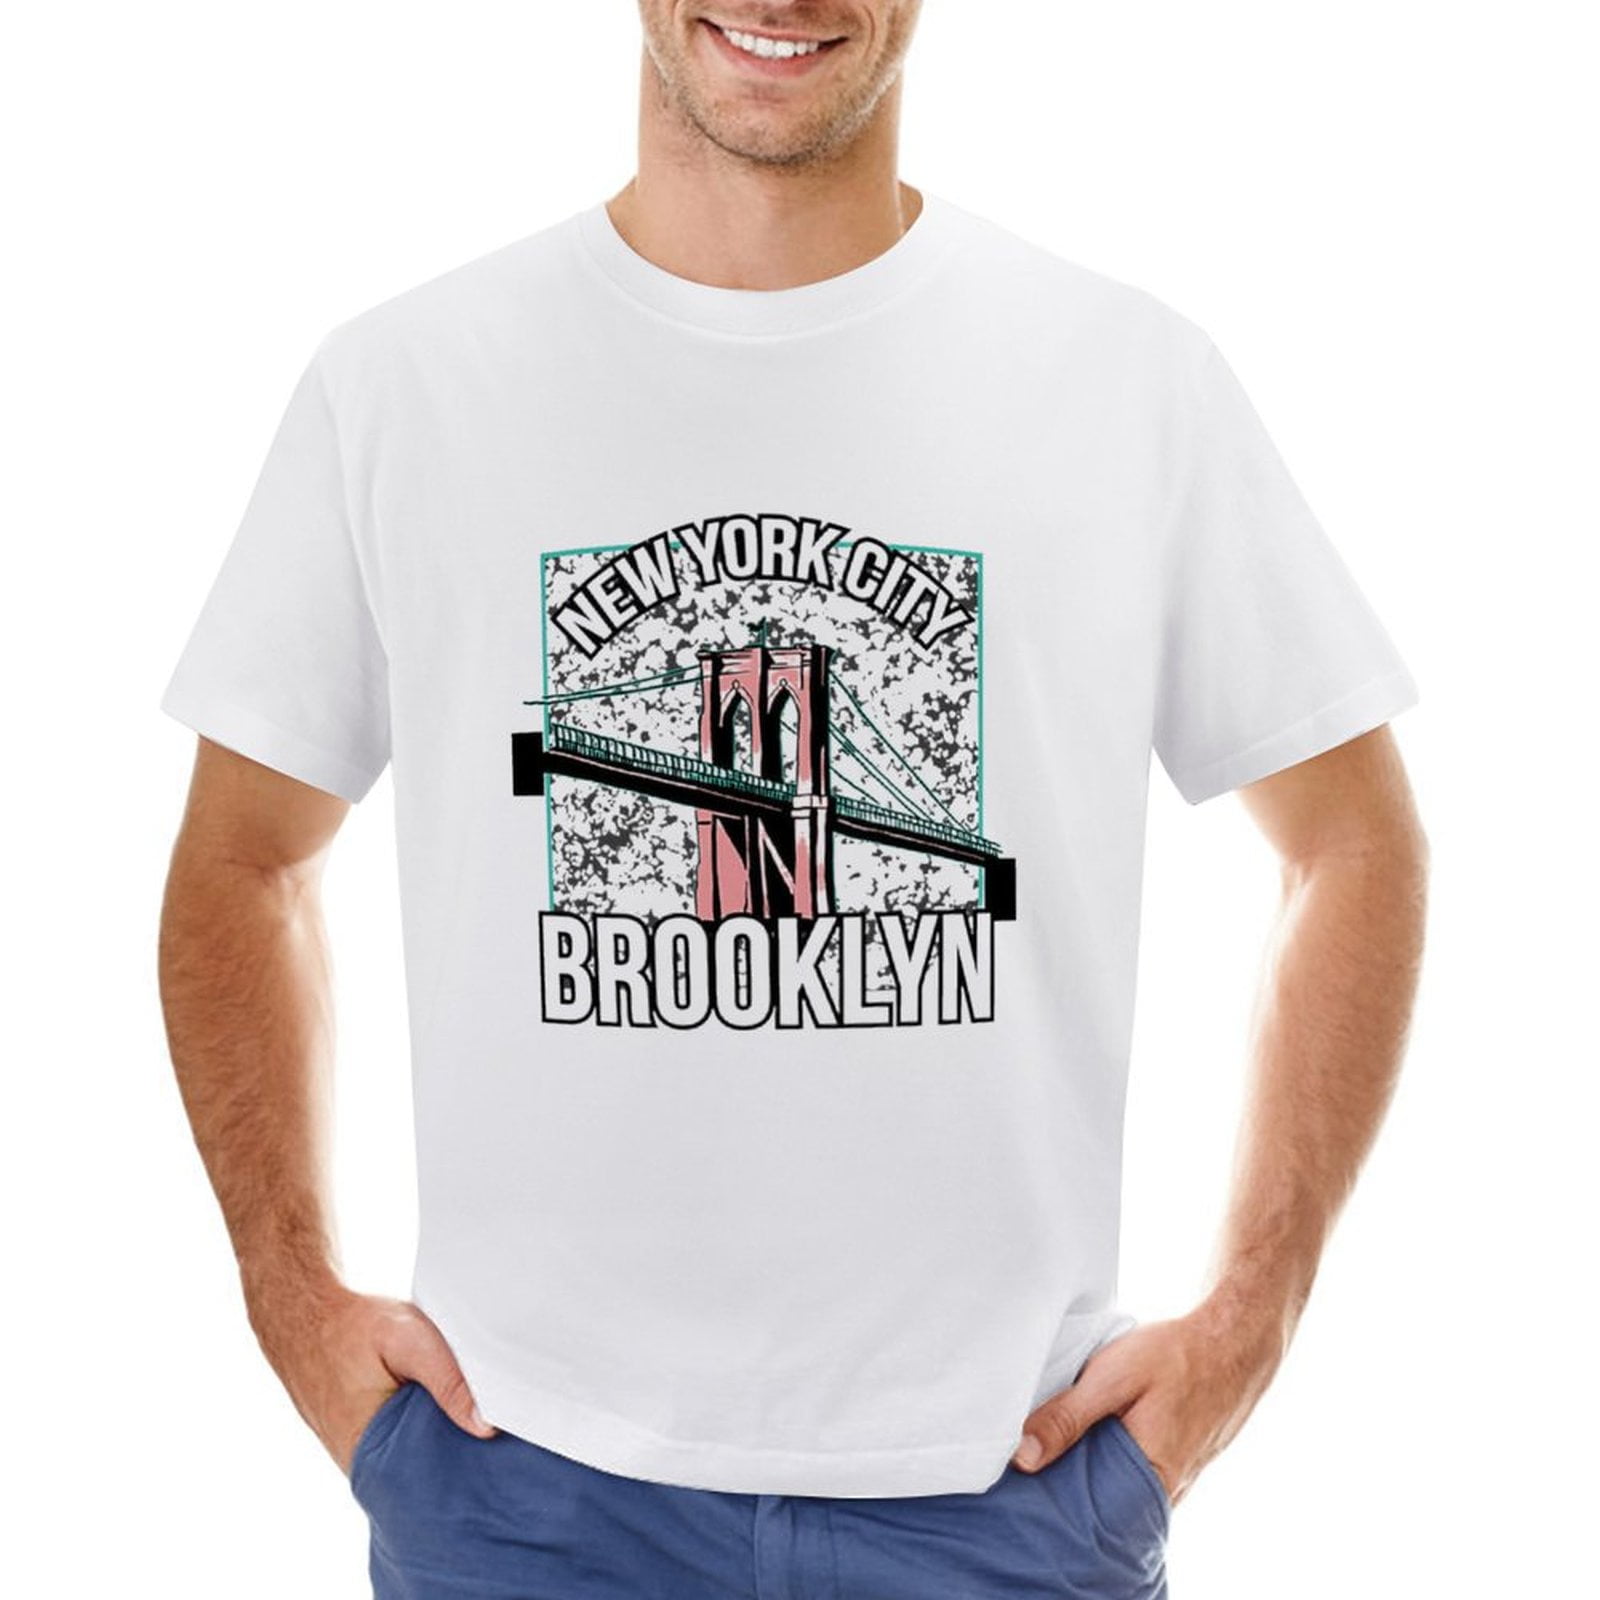 MTA Sport Mens T Shirt Fast Dri Black Size Large Athletic